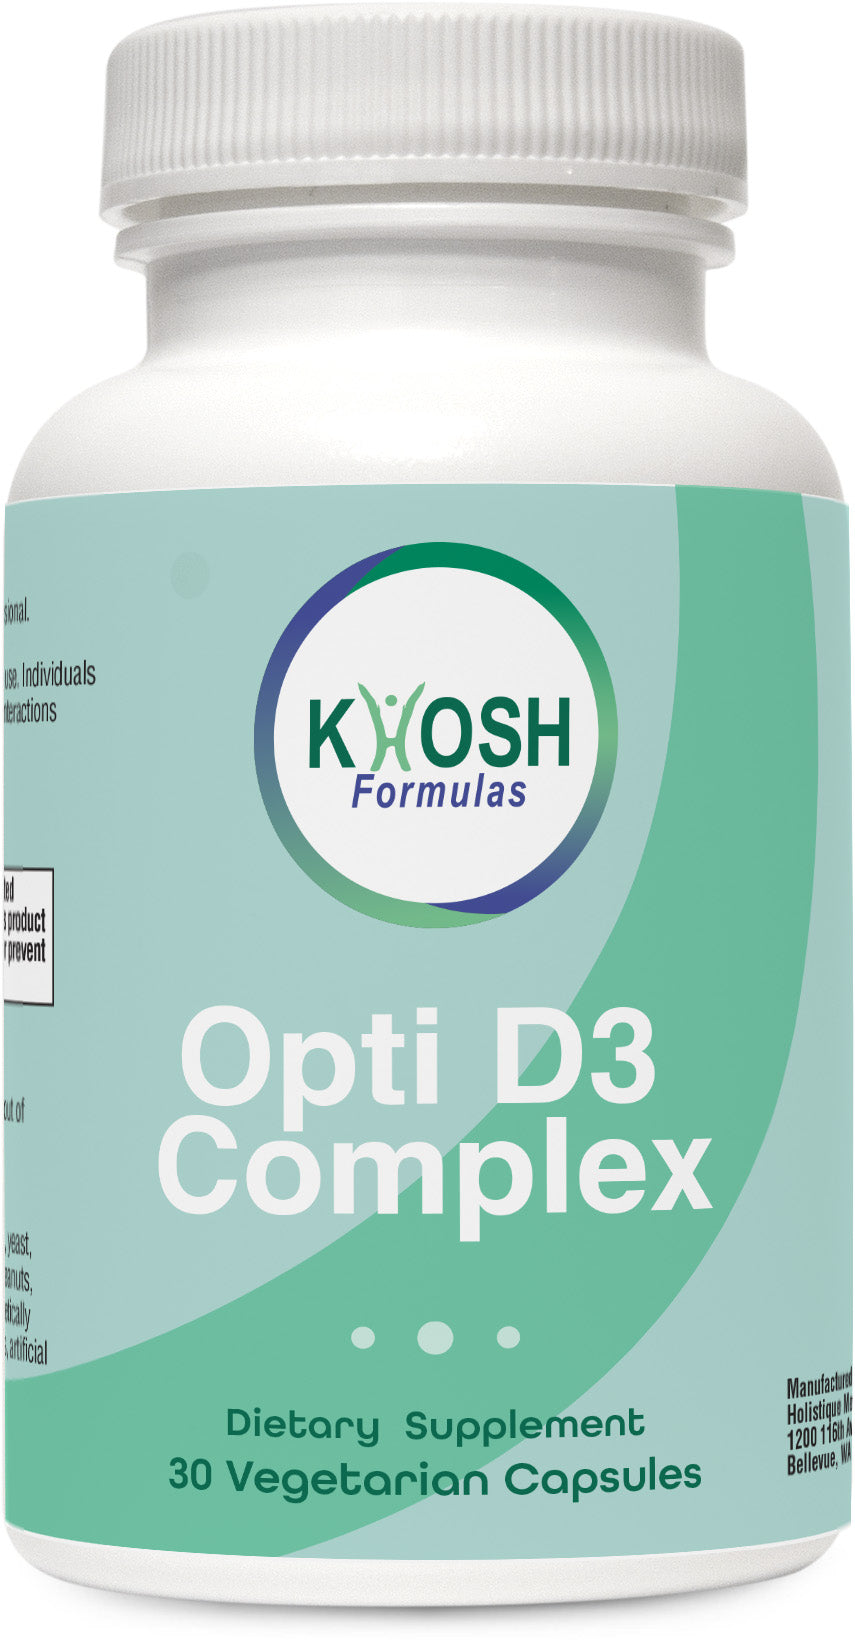 Opti D3 Complex (30 caps), KHOSH